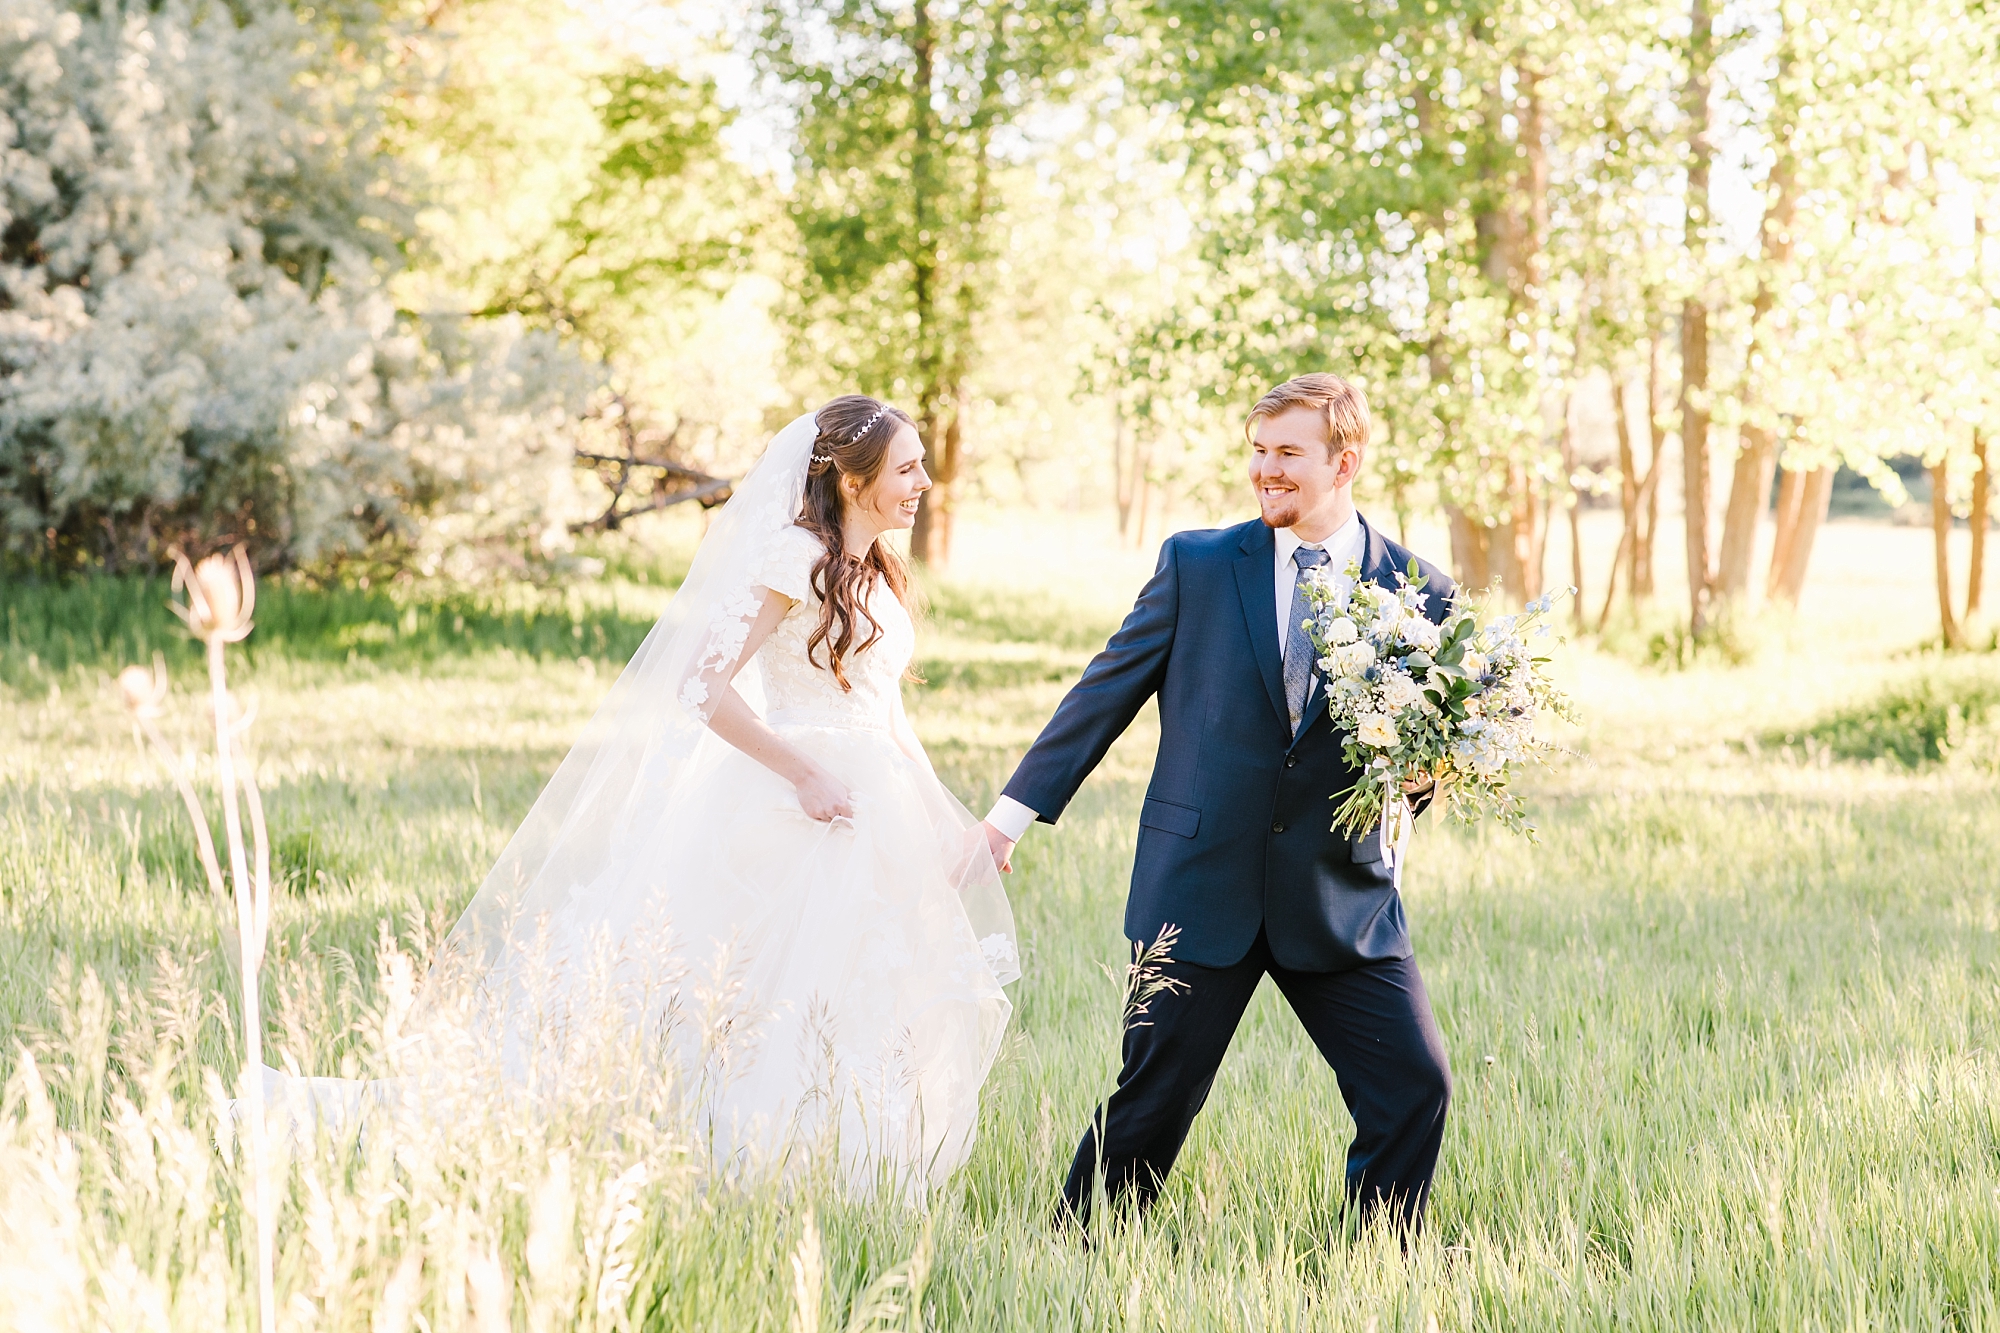 Utah bride and groom